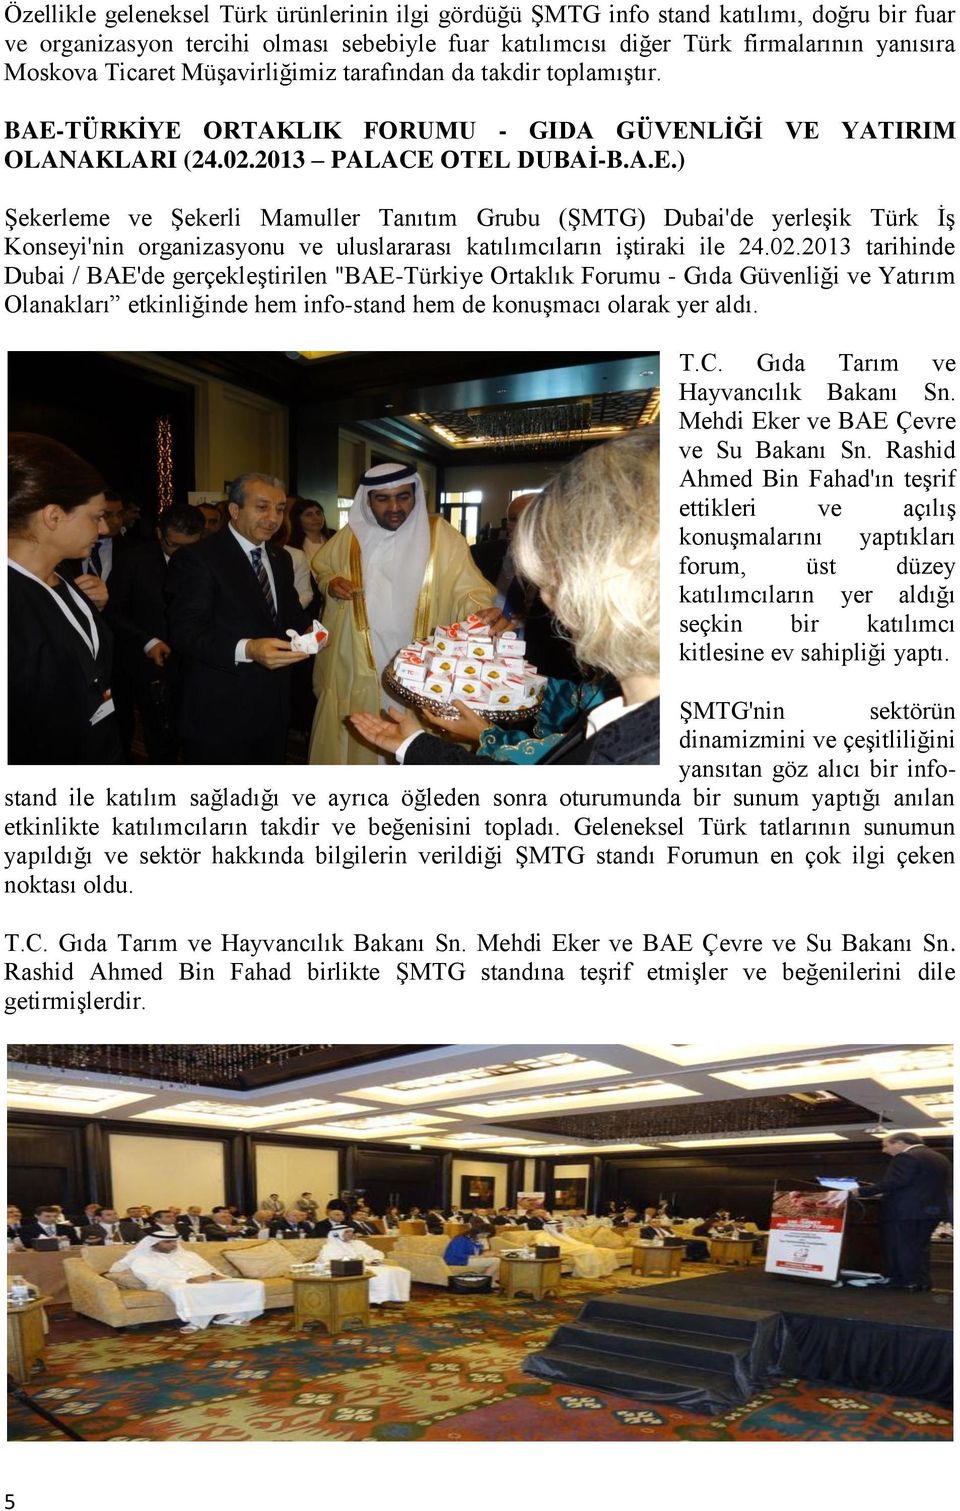 TÜRKİYE ORTAKLIK FORUMU - GIDA GÜVENLİĞİ VE YATIRIM OLANAKLARI (24.02.2013 PALACE OTEL DUBAİ-B.A.E.) Şekerleme ve Şekerli Mamuller Tanıtım Grubu (ŞMTG) Dubai'de yerleşik Türk İş Konseyi'nin organizasyonu ve uluslararası katılımcıların iştiraki ile 24.